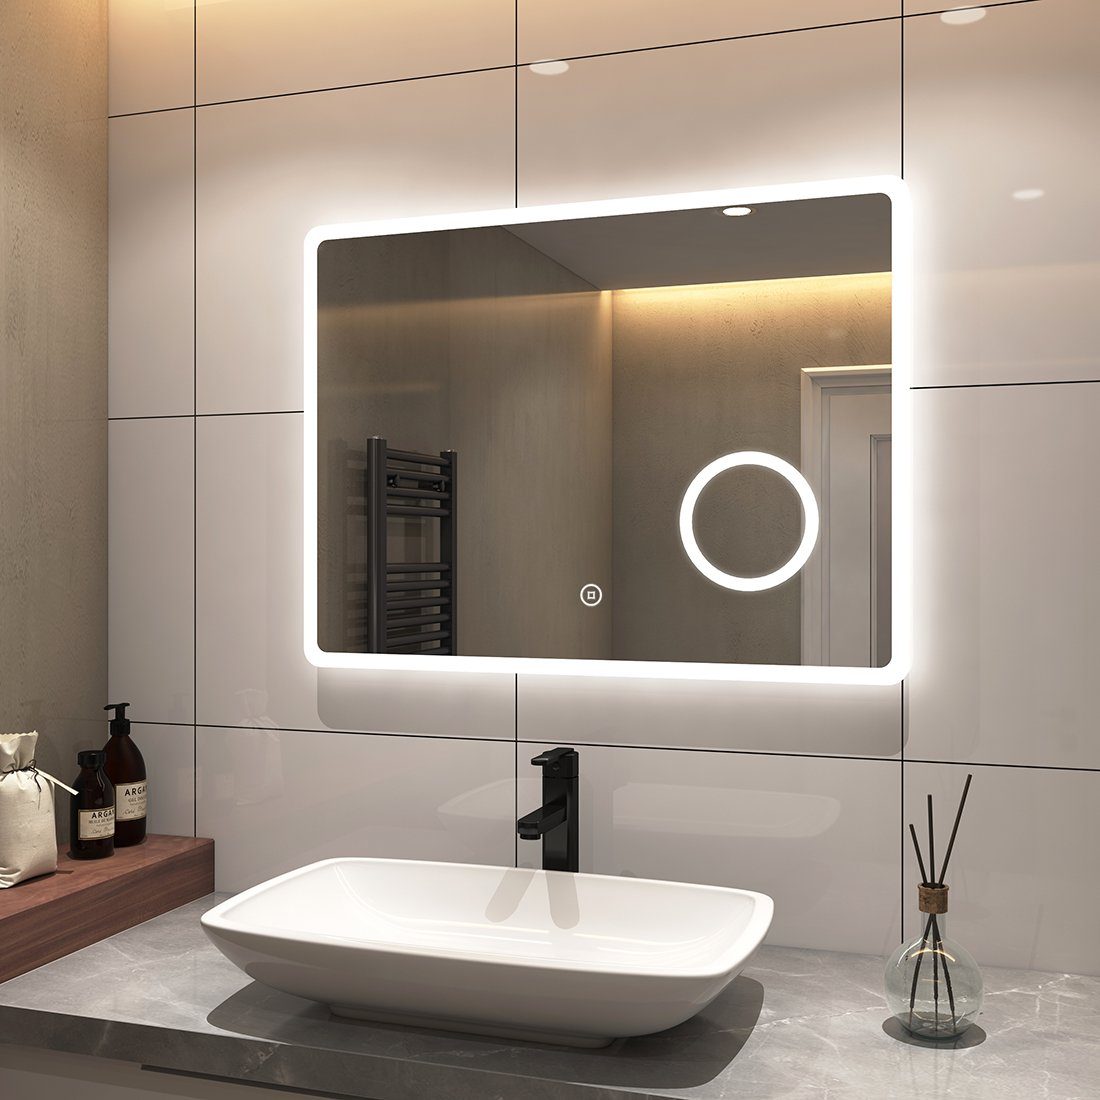 S'AFIELINA Badspiegel LED Badspiegel mit Beleuchtung Rasierspiegel Wandspiegel, Touchschalter,Beschlagfrei,3-fach Vergrößerung,Kaltweiß 6500K